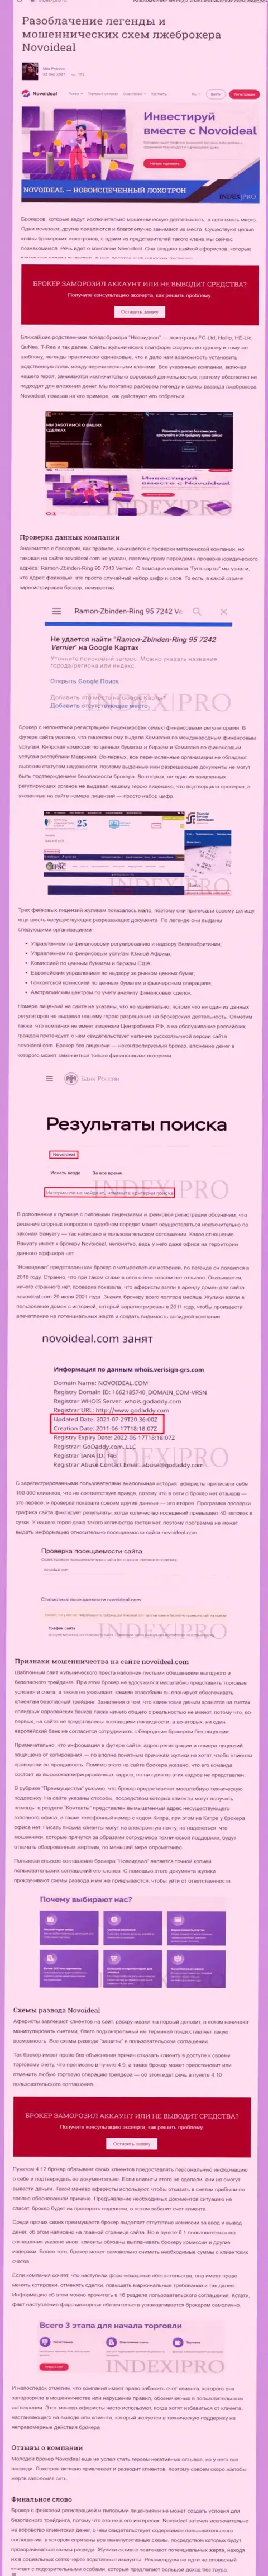 NovoIdeal это МАХИНАТОРЫ ! статья со свидетельством противозаконных деяний